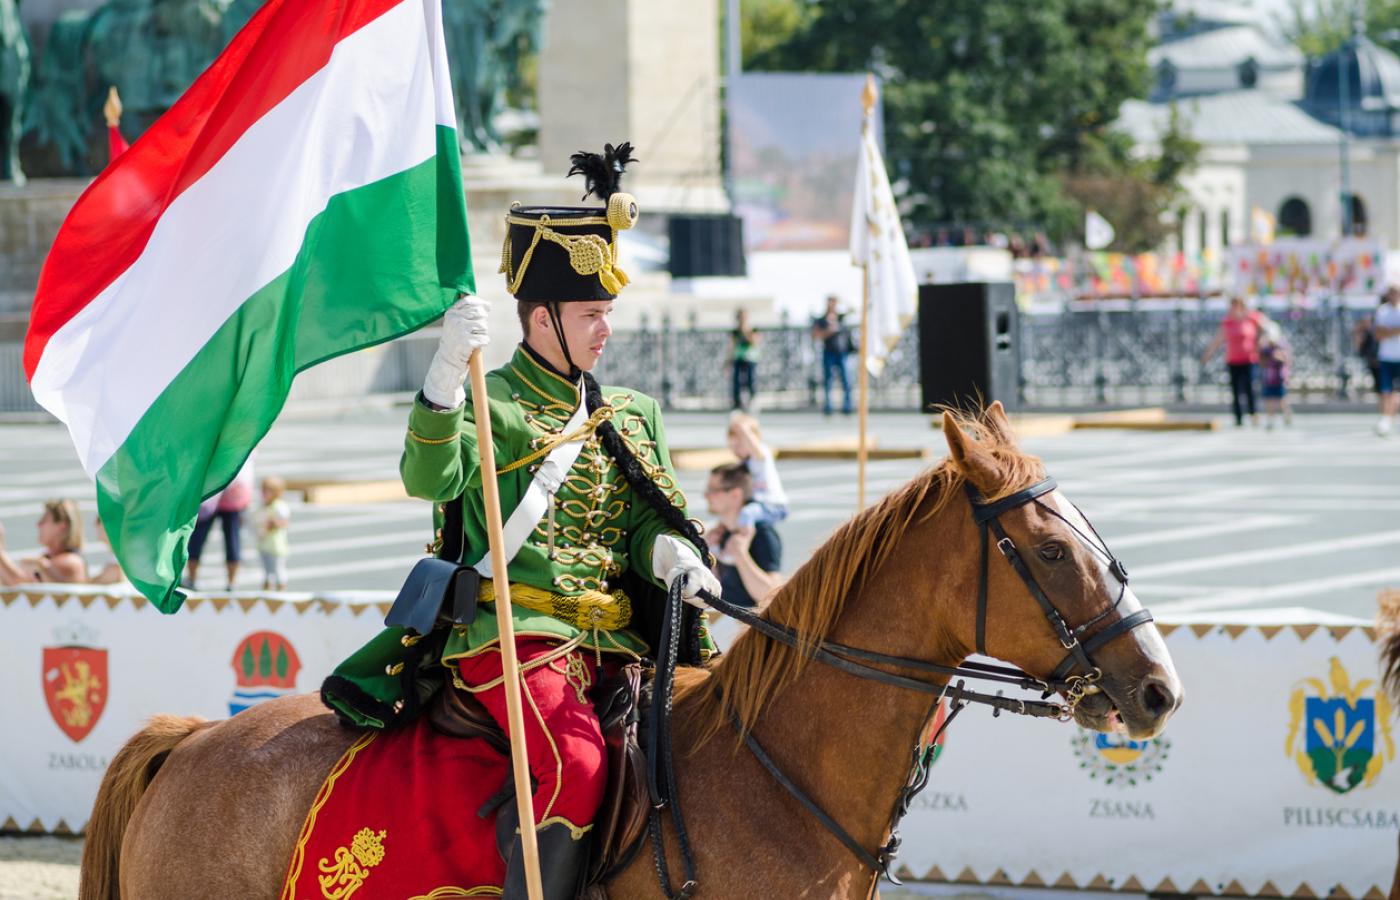 Tradycyjny mundur wojskowy/ festiwal Heritage Days, Budapeszt (Fot. iStock)